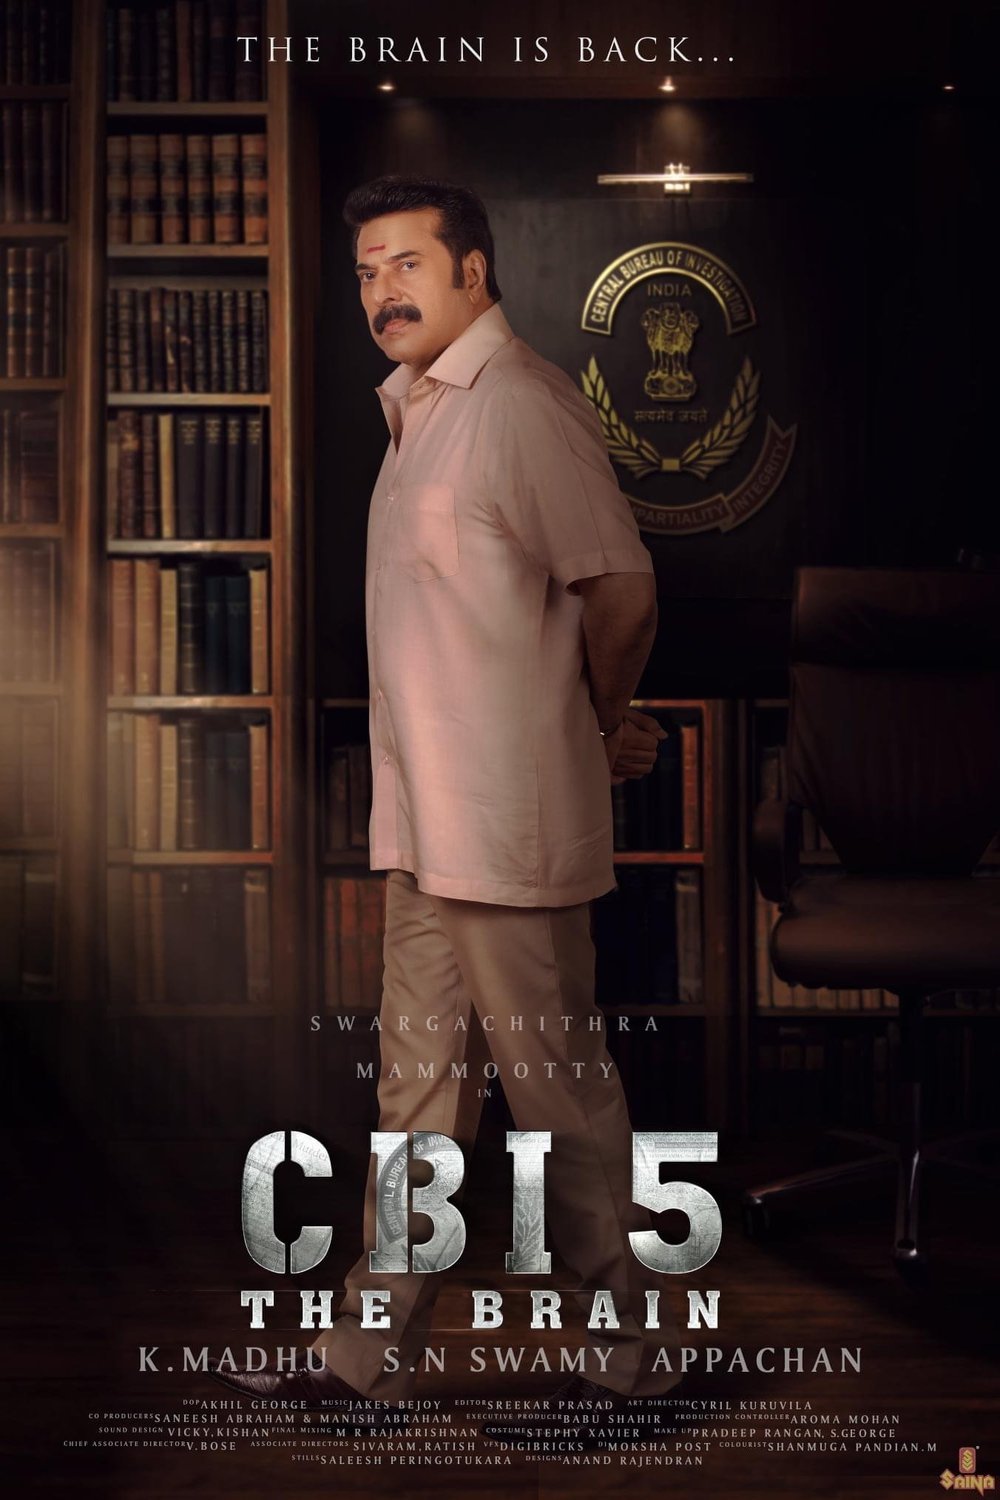 L'affiche originale du film CBI 5 en Malayâlam